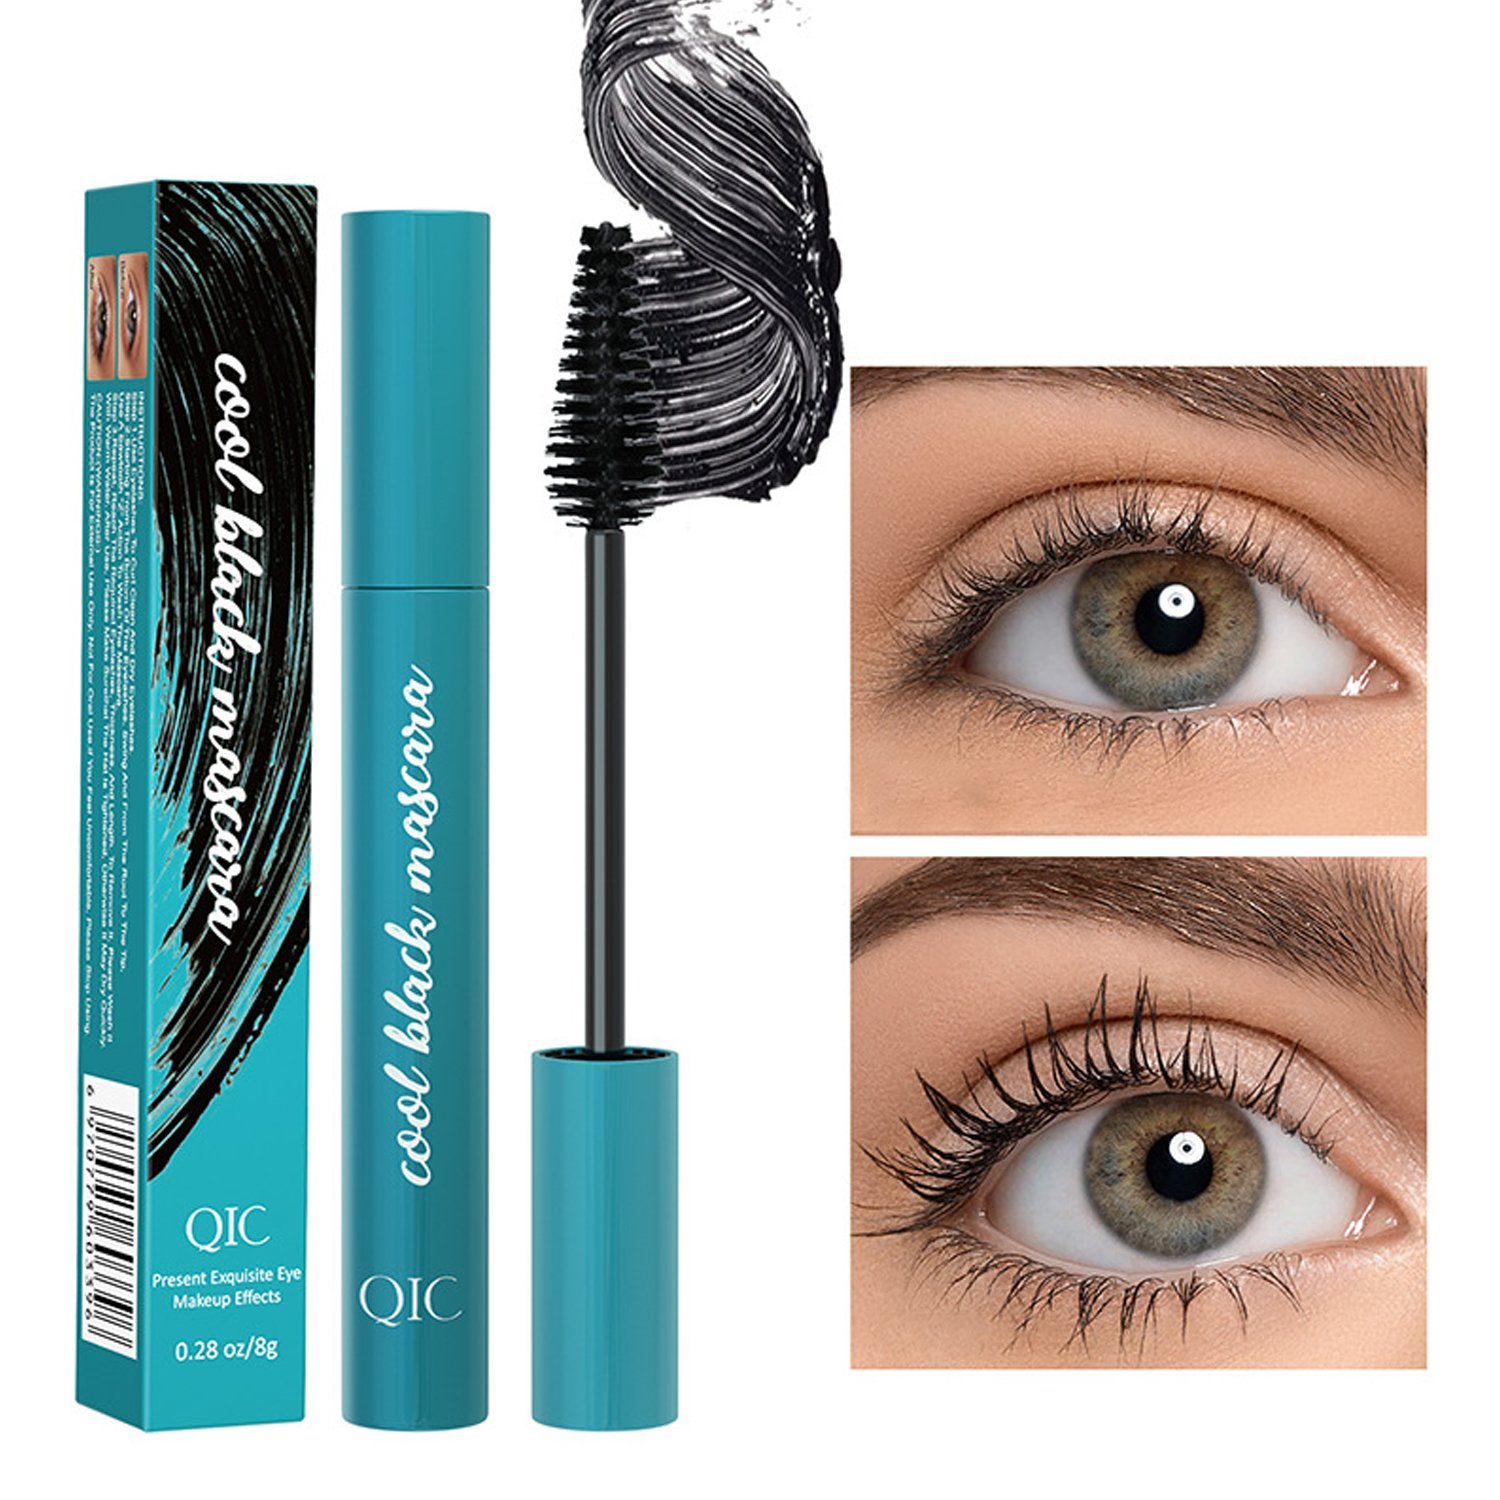 Scheiffy Mascara Wimperntusche, 4D Mascara, Mascara für Volumen und Definition, Wasserdicht Langlebig Natürlich Augen Make-up